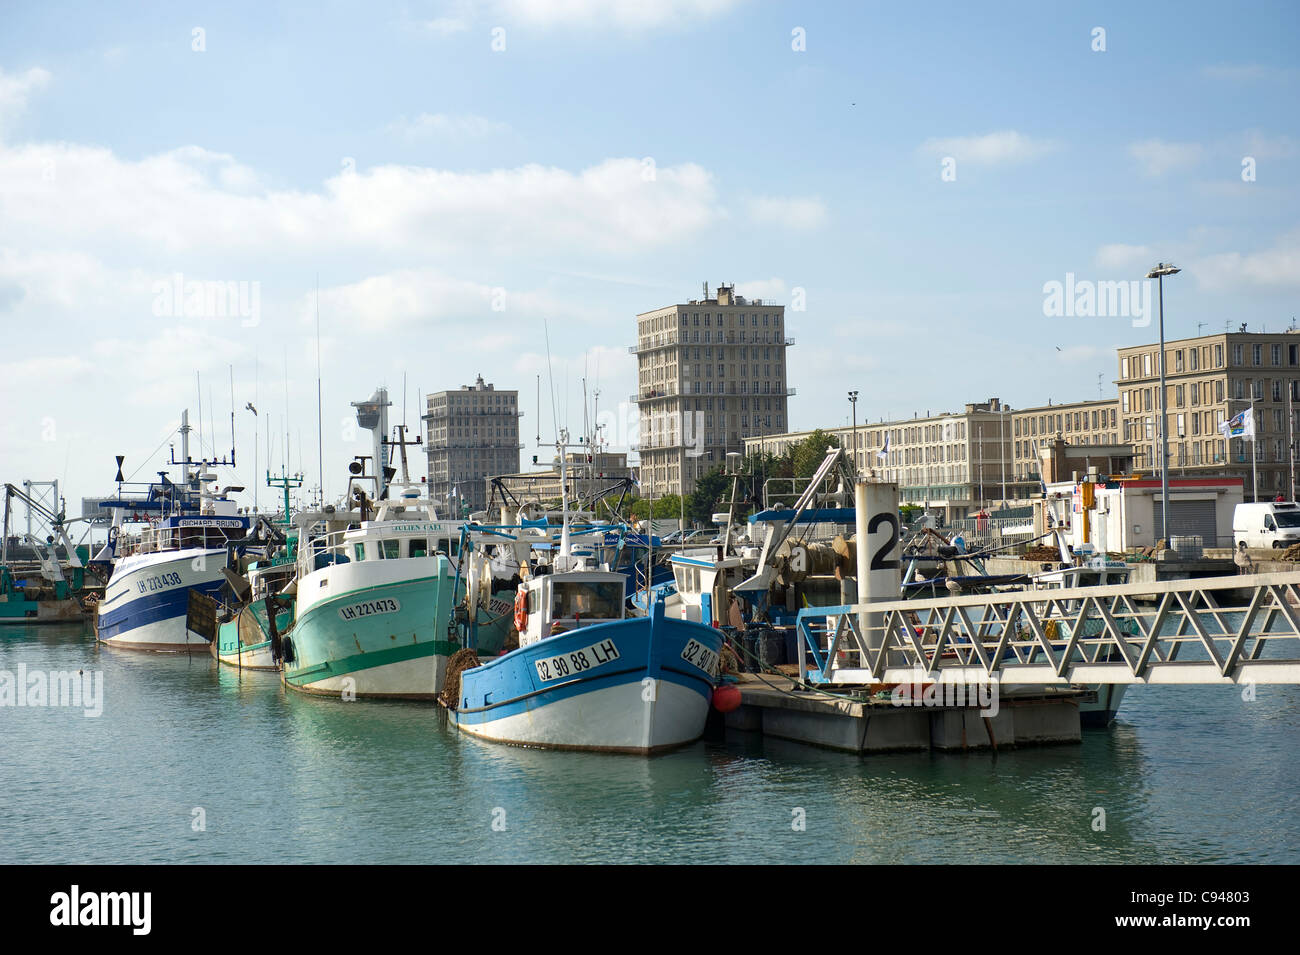 Bassin de la Manche, il porto di pesca di UNESCO World Heritage Site Le Havre in Normandia, con le navi per la pesca a strascico Foto Stock